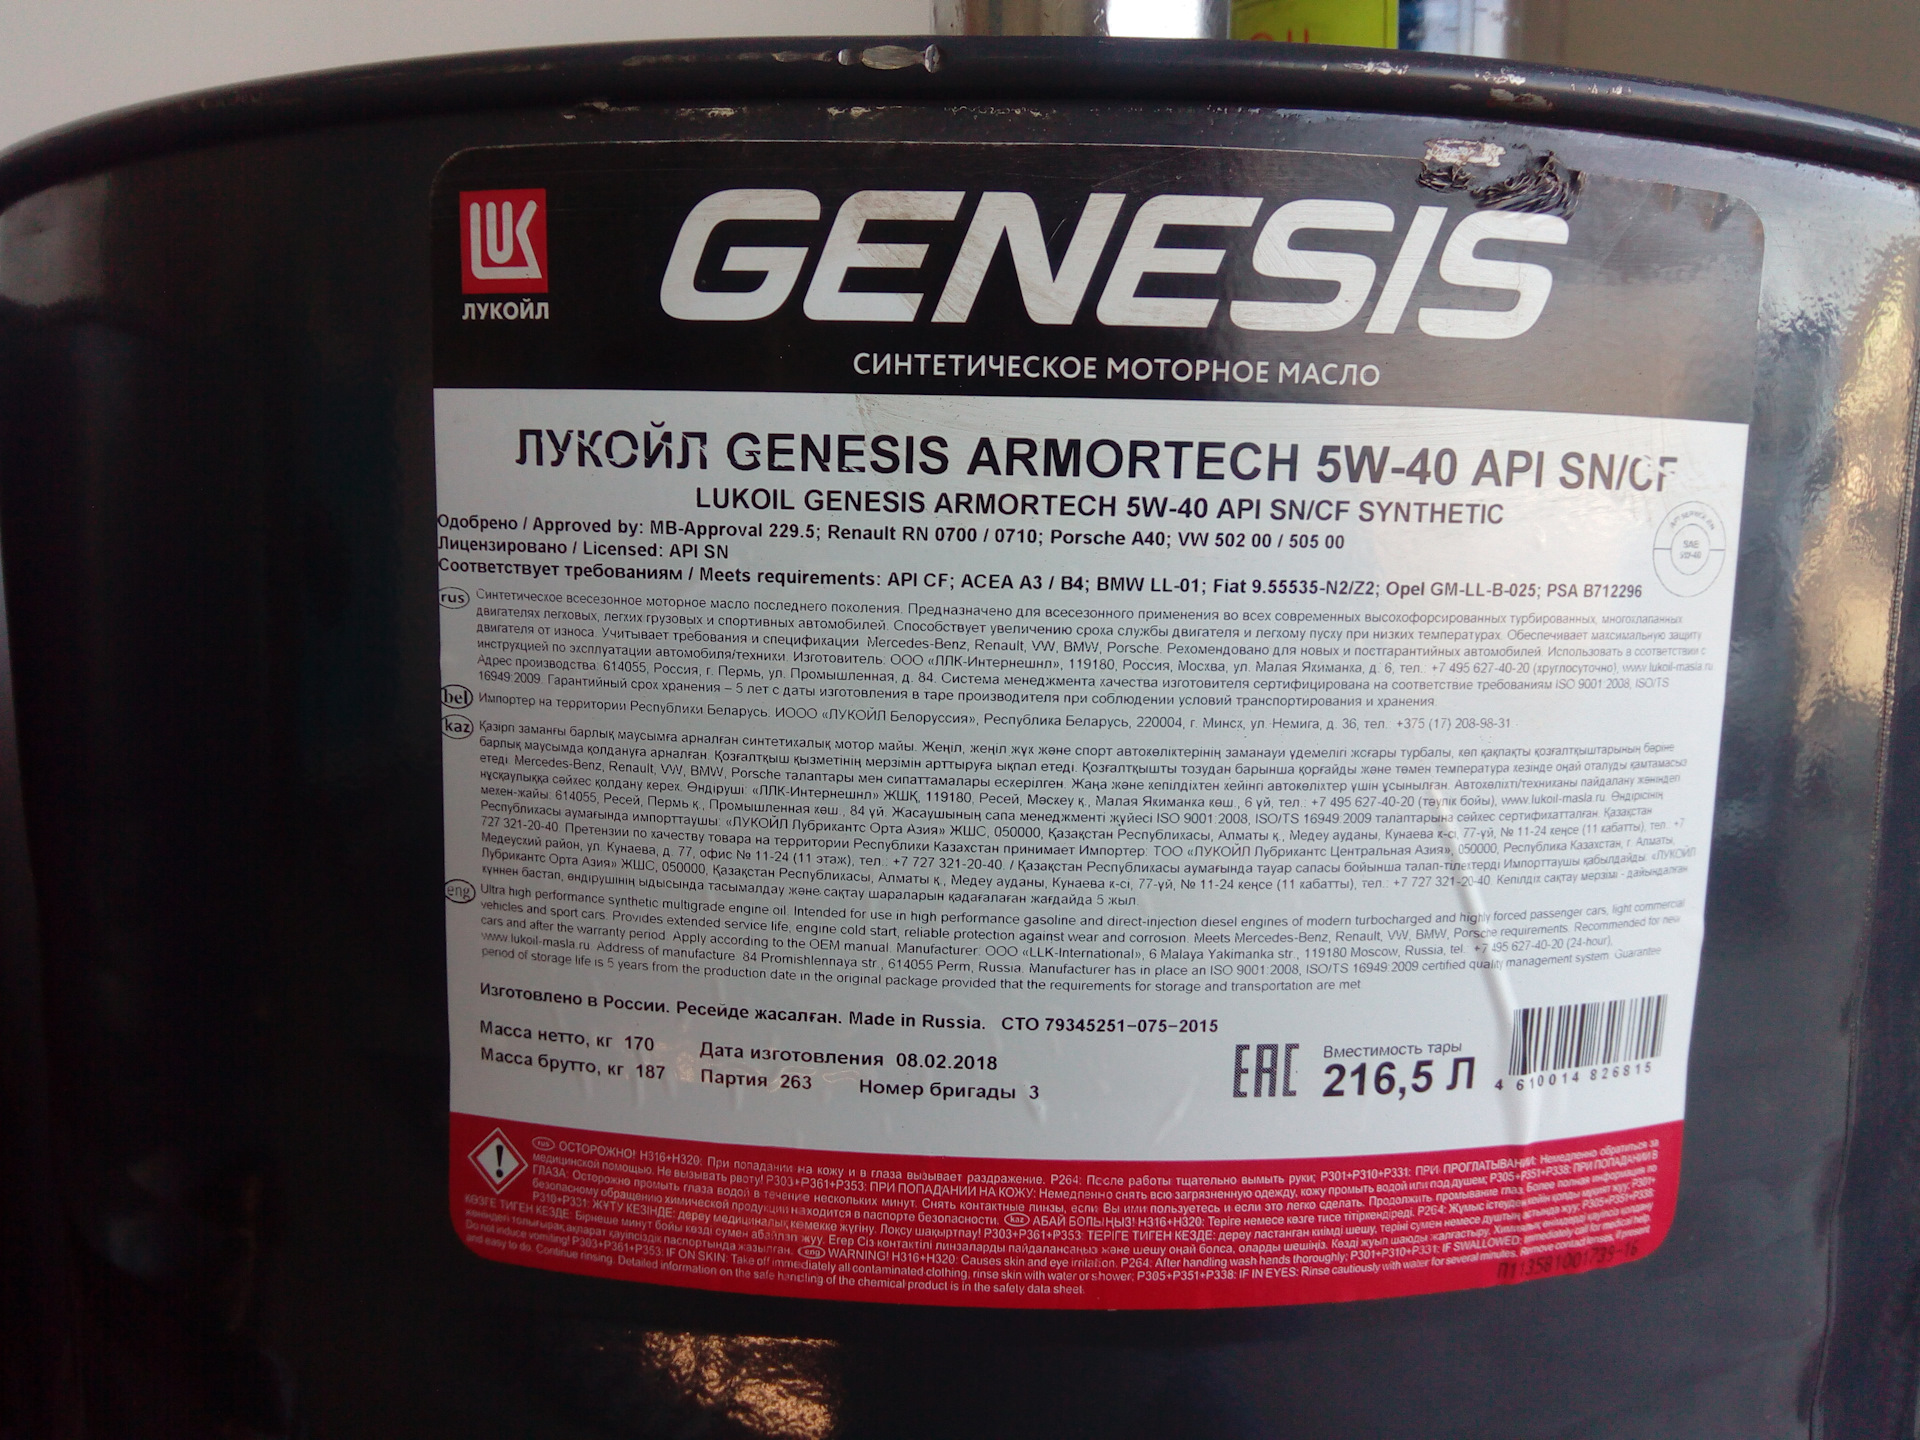 Купить 5 литров масла лукойл. Genesis Special Advanced 5w-40. Моторное масло Лукойл Дженезис Special 5w-40. Lukoil Genesis 5w-30 бочка. Lukoil Genesis Armortech 5w-40.